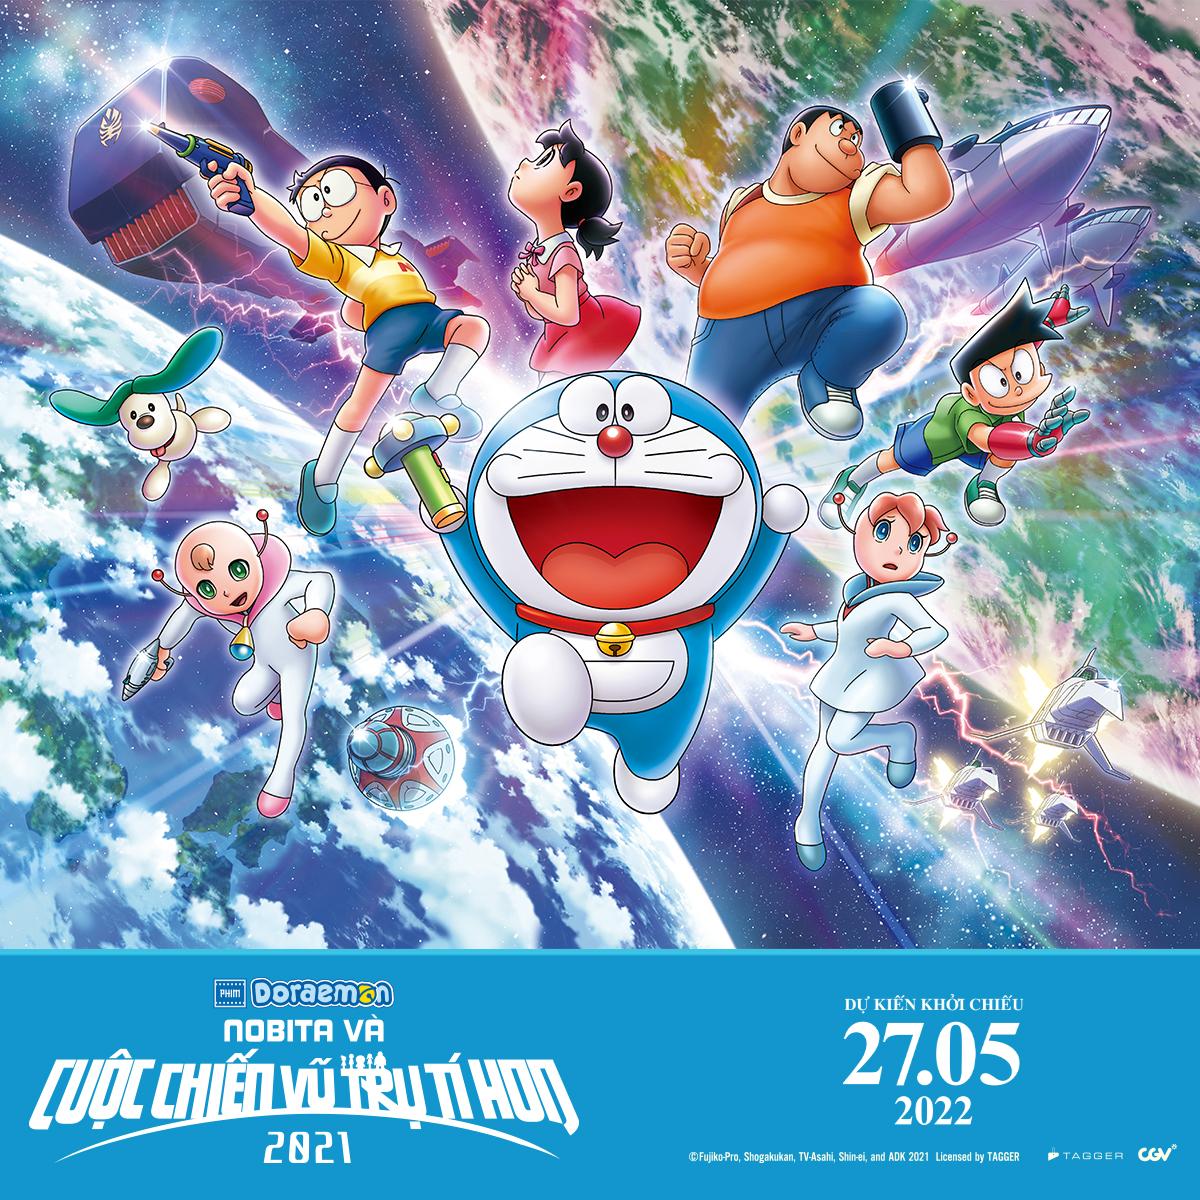 Thế giới diệu kỳ Doraemon đang chờ đón bạn khám phá. Từ những chiếc cánh cổng đến những vật dụng thông minh, bạn sẽ phải ngạc nhiên trước sự phong phú của thế giới này. Hãy truy cập hình ảnh liên quan để thấy điều đó.